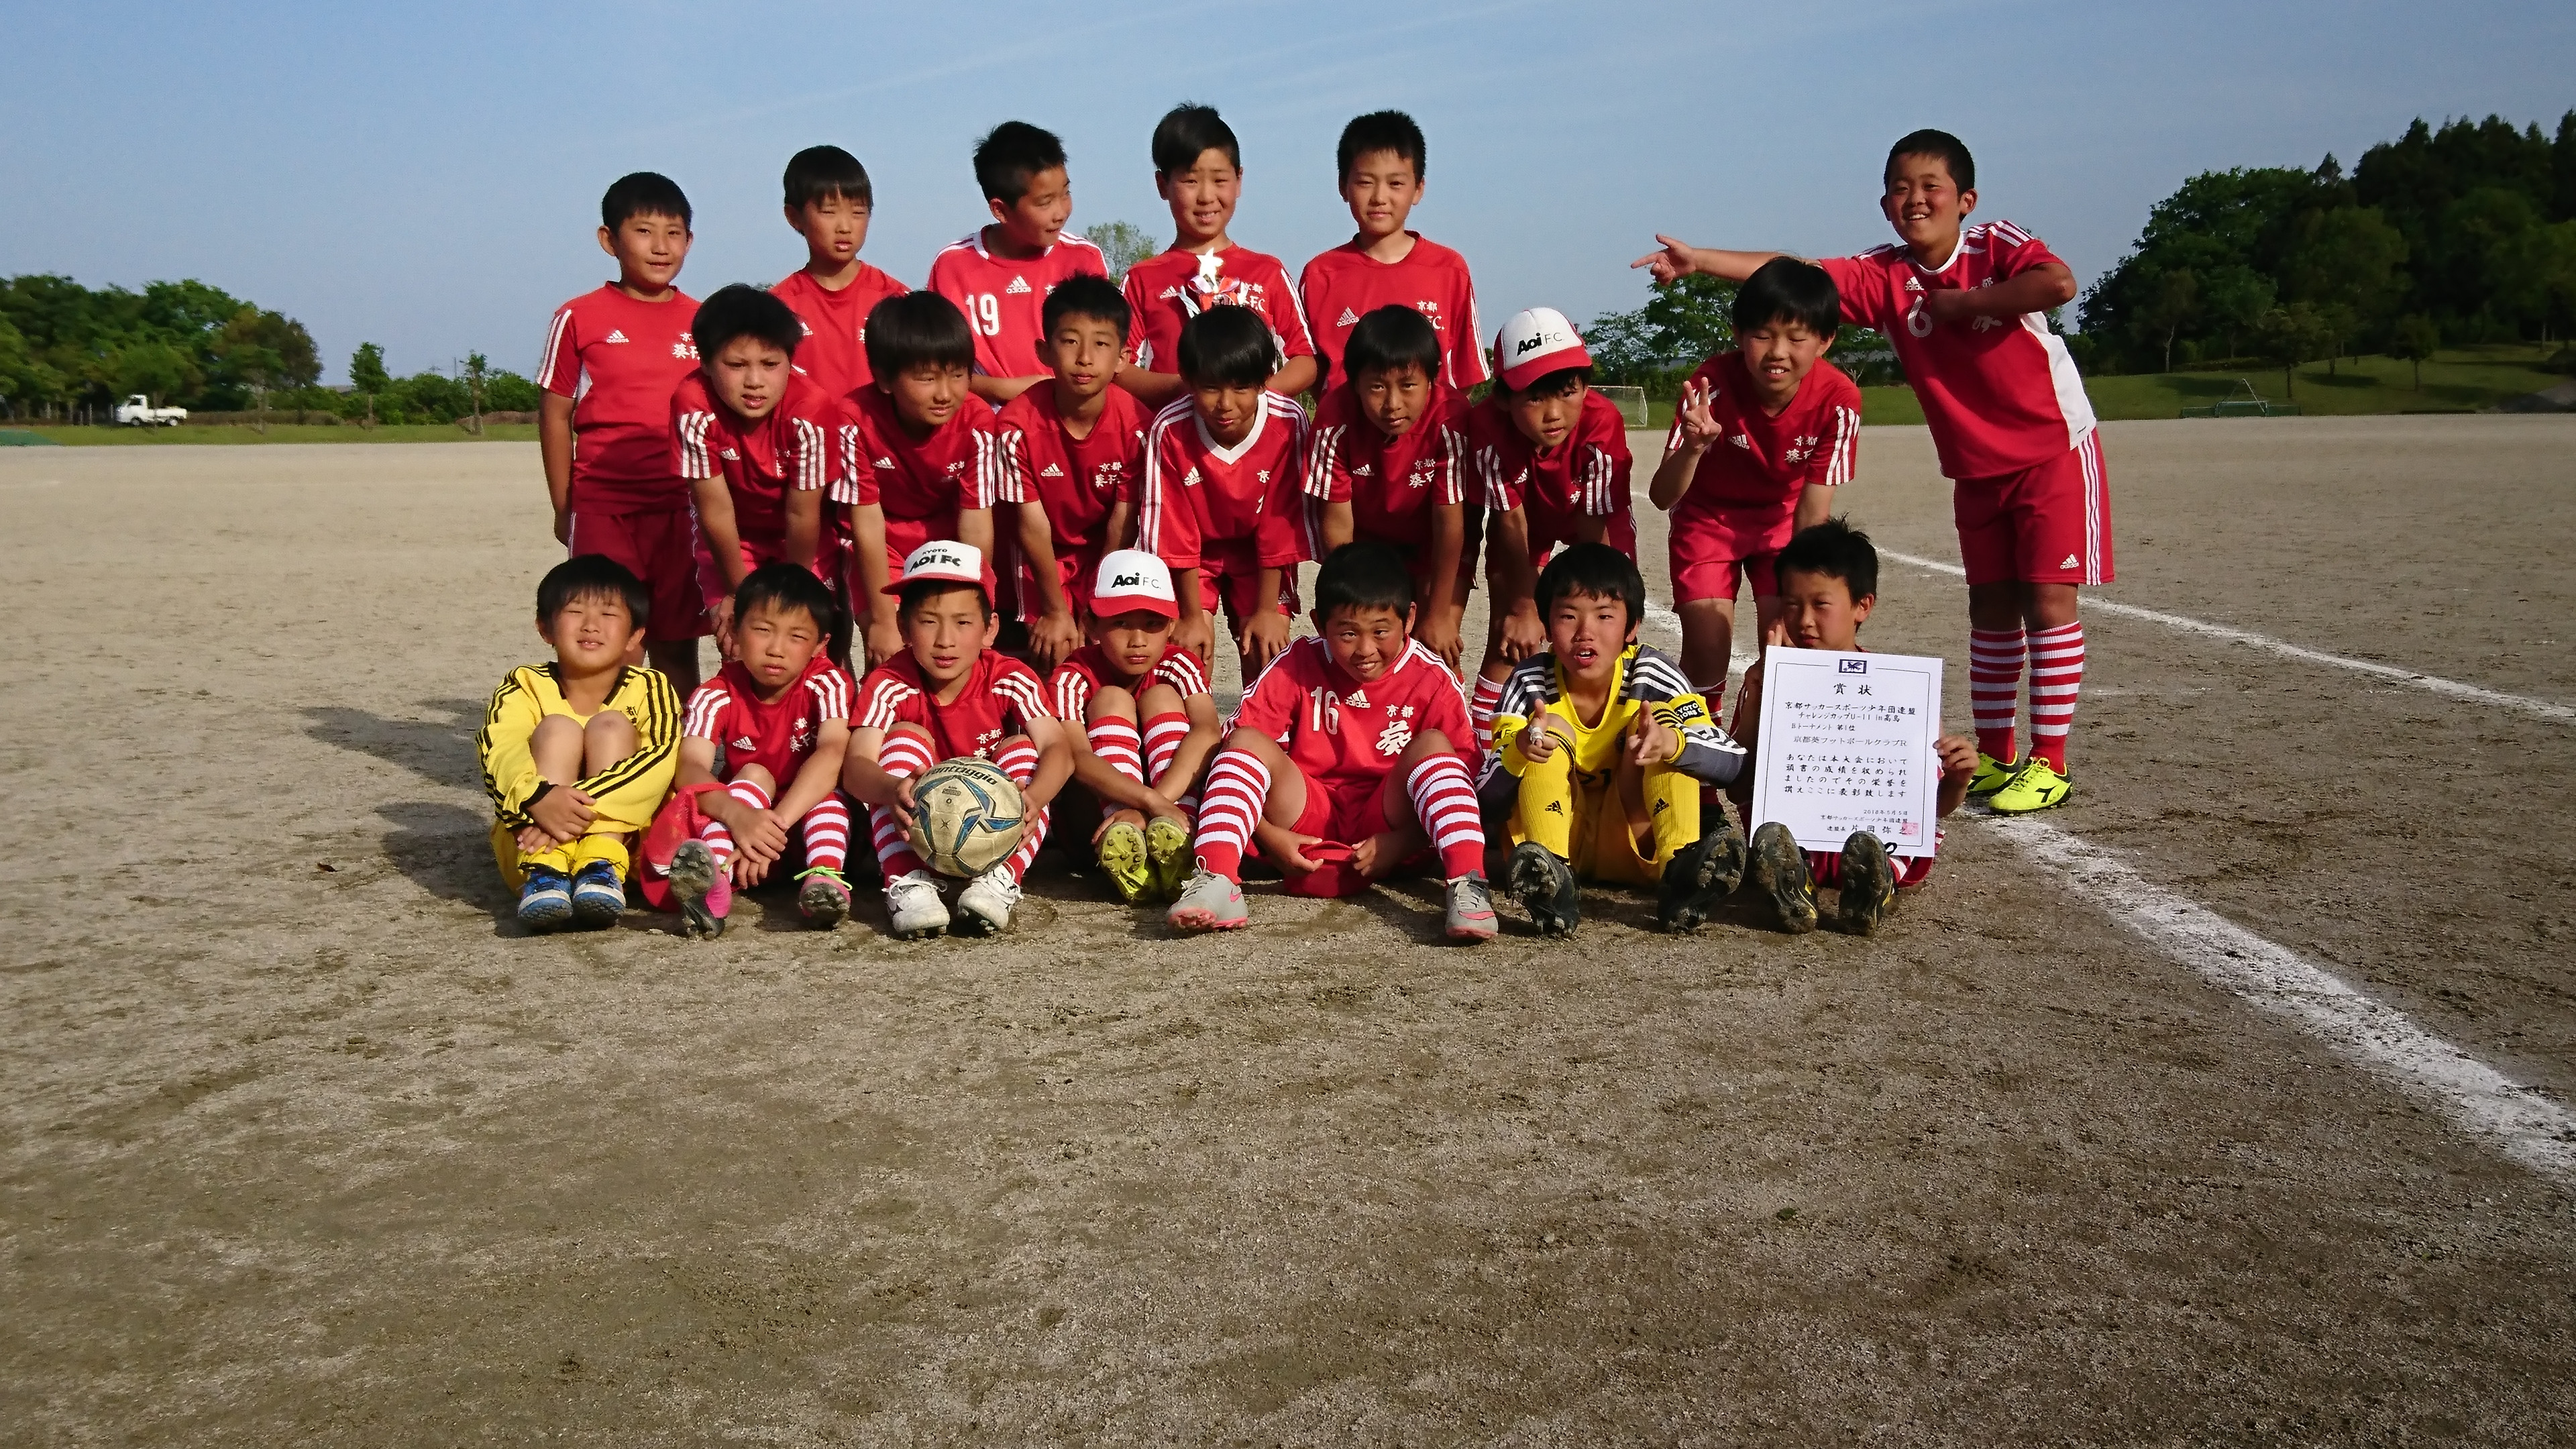 小学5年生 チャレンジカップin高島 京都葵フットボールクラブ 幼児 小学生 中学生対象のサッカークラブ